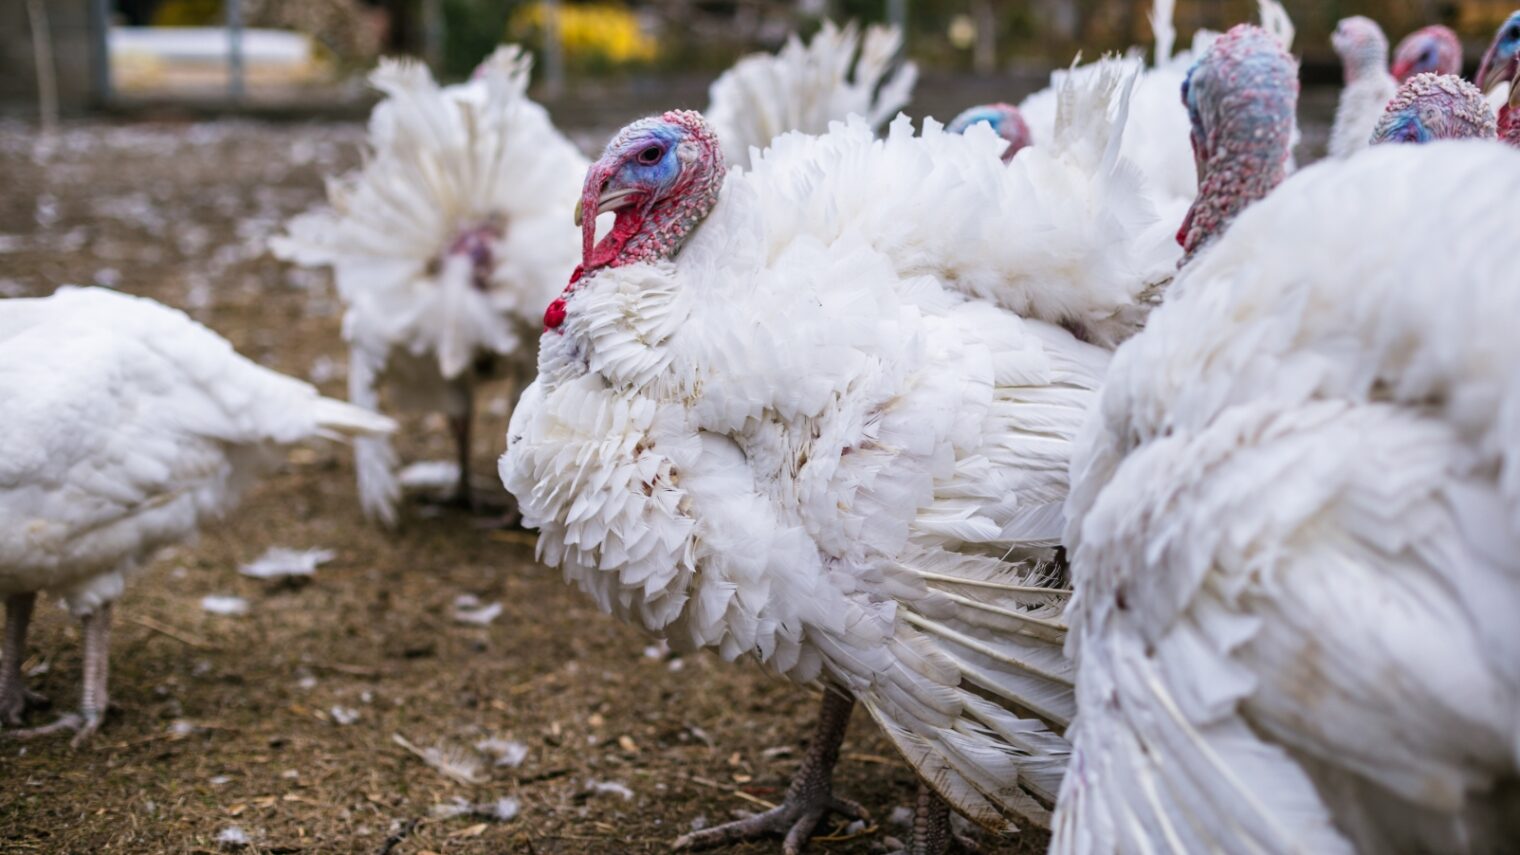 Turkeys on a farm. Photo by Bearok/Shutterstock.com